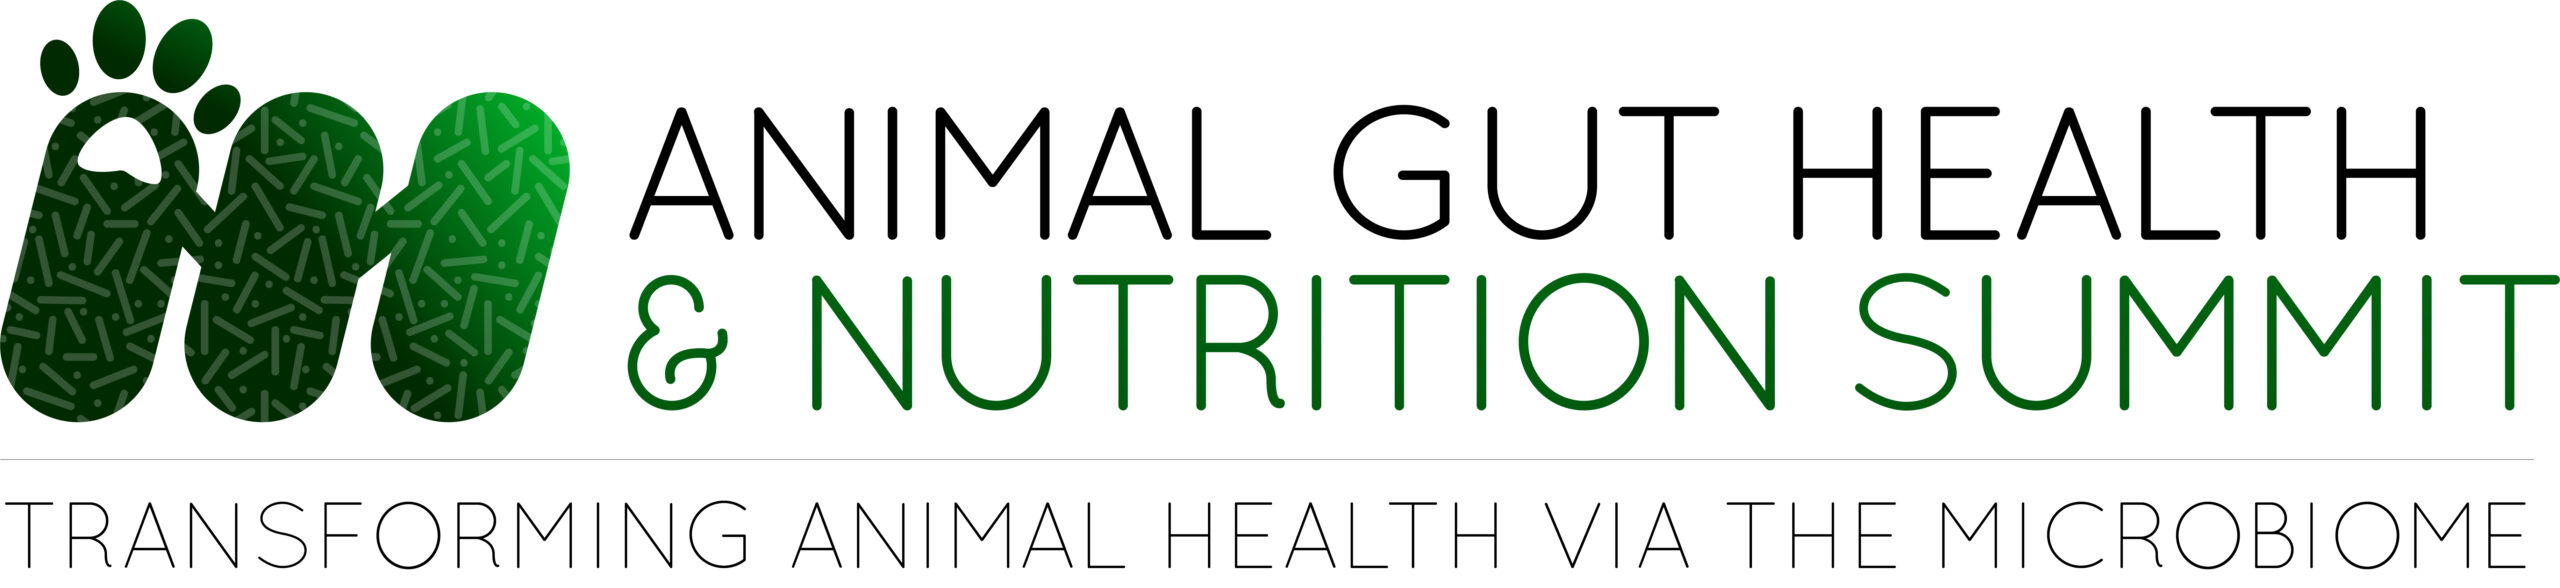 4th Animal Gut Health & Nutrition Summit 2021 logo